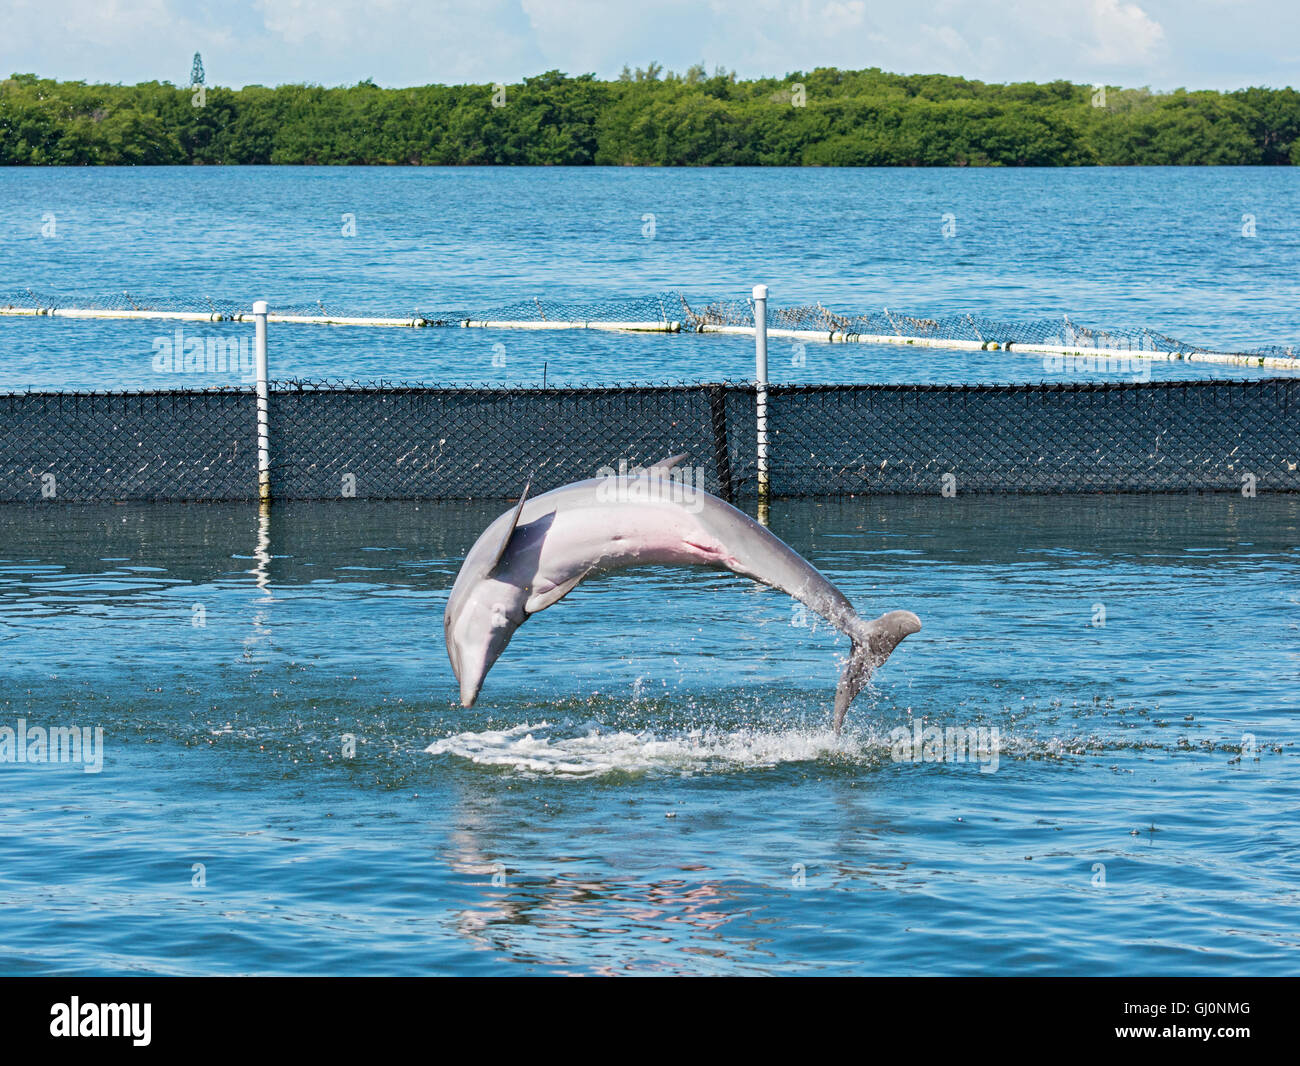 Grassy Key, Florida Keys Dolphin Research Center, ein Delfin springen Folge 2 von 2 Stockfoto